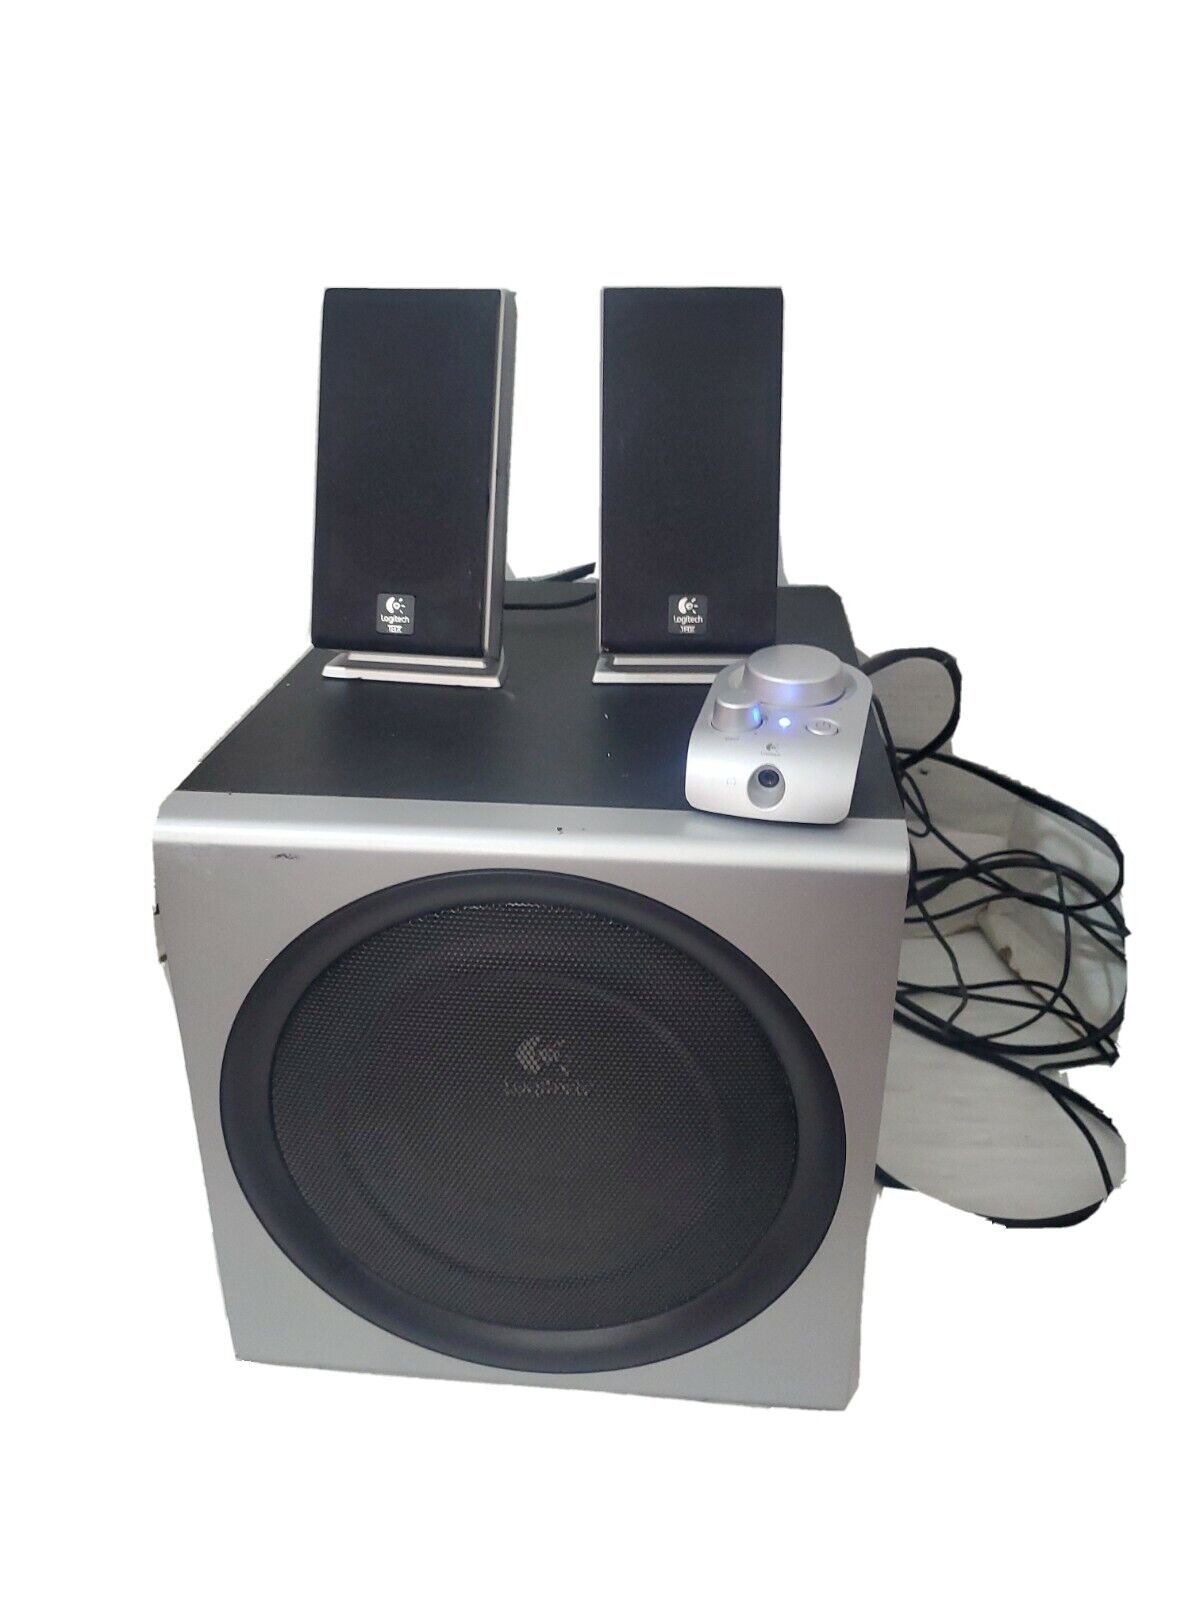 Logitech Z-2300 2.1 Computer Speaker System Subwoofer, Volume Control Pod Silver